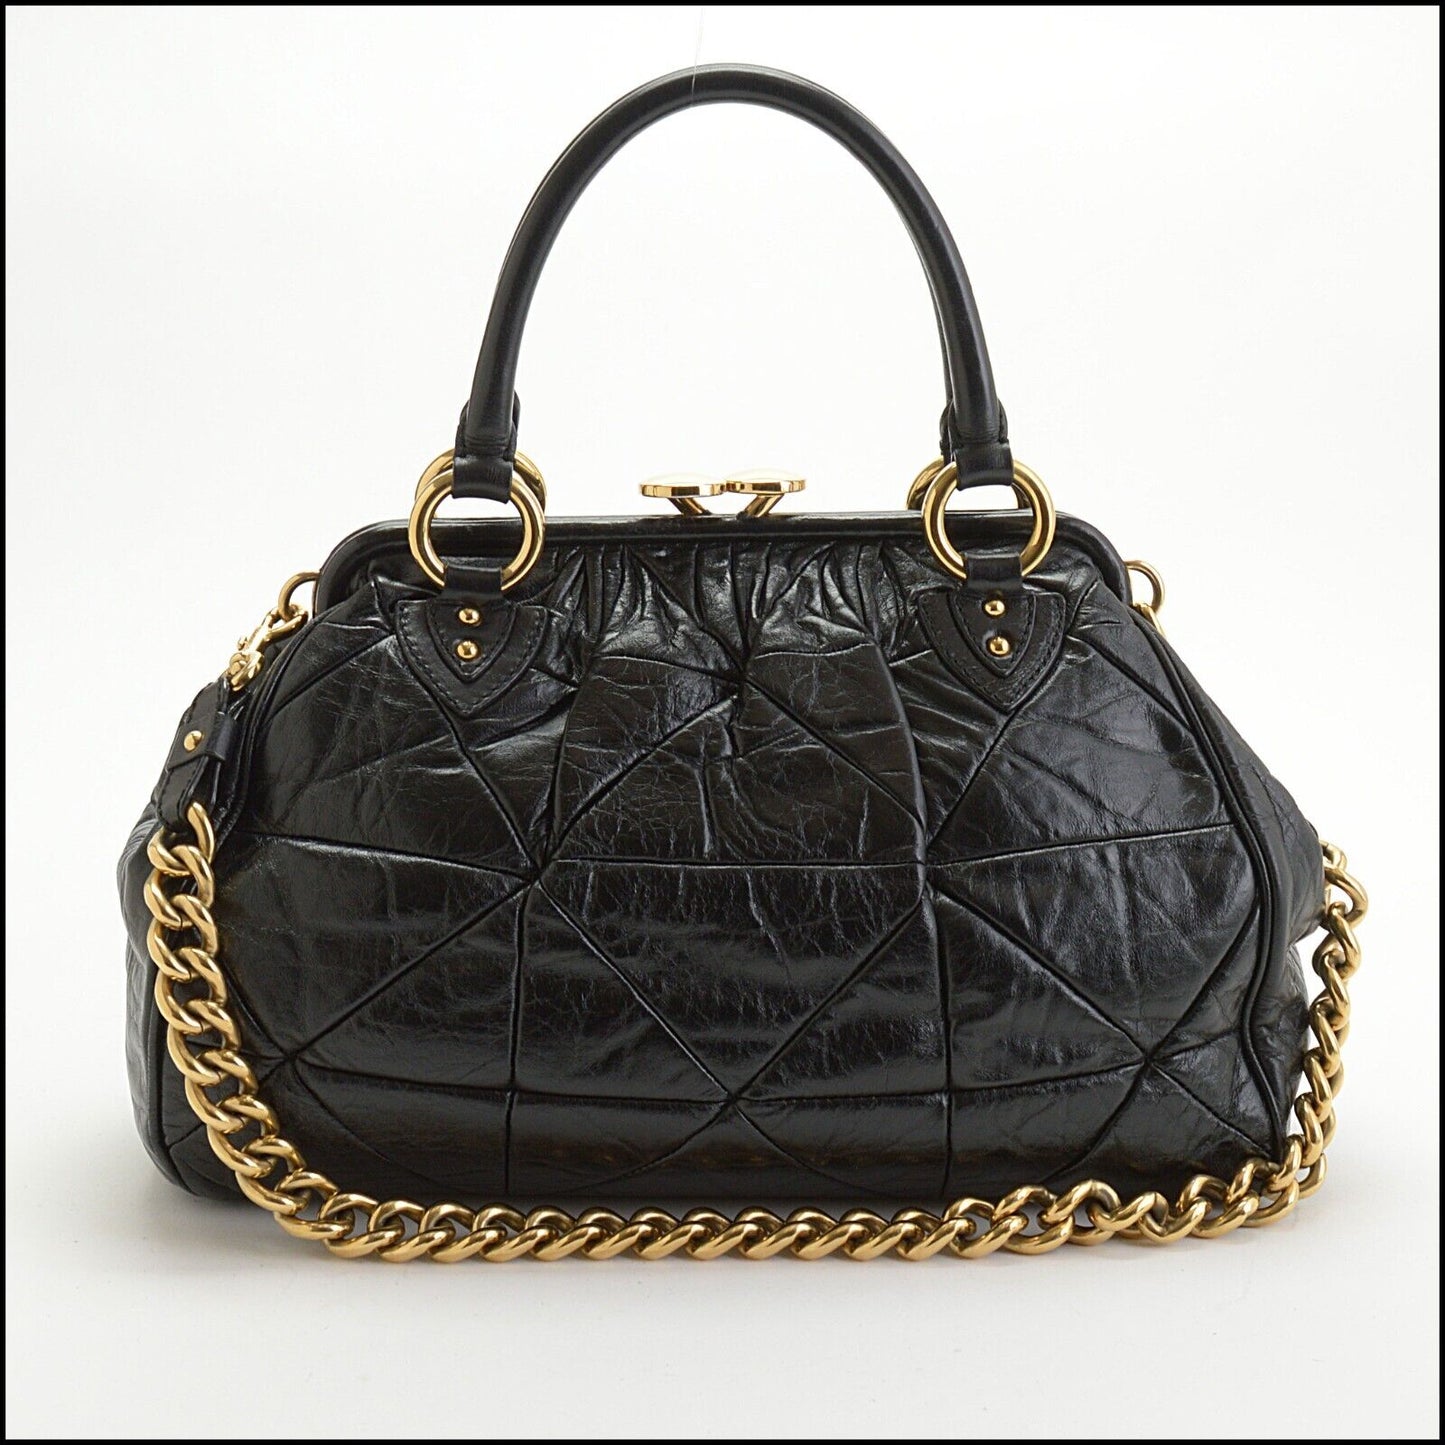 RDC13735 Authentic MARC JACOBS Vintage Black Patchwork Leather Stam Bag